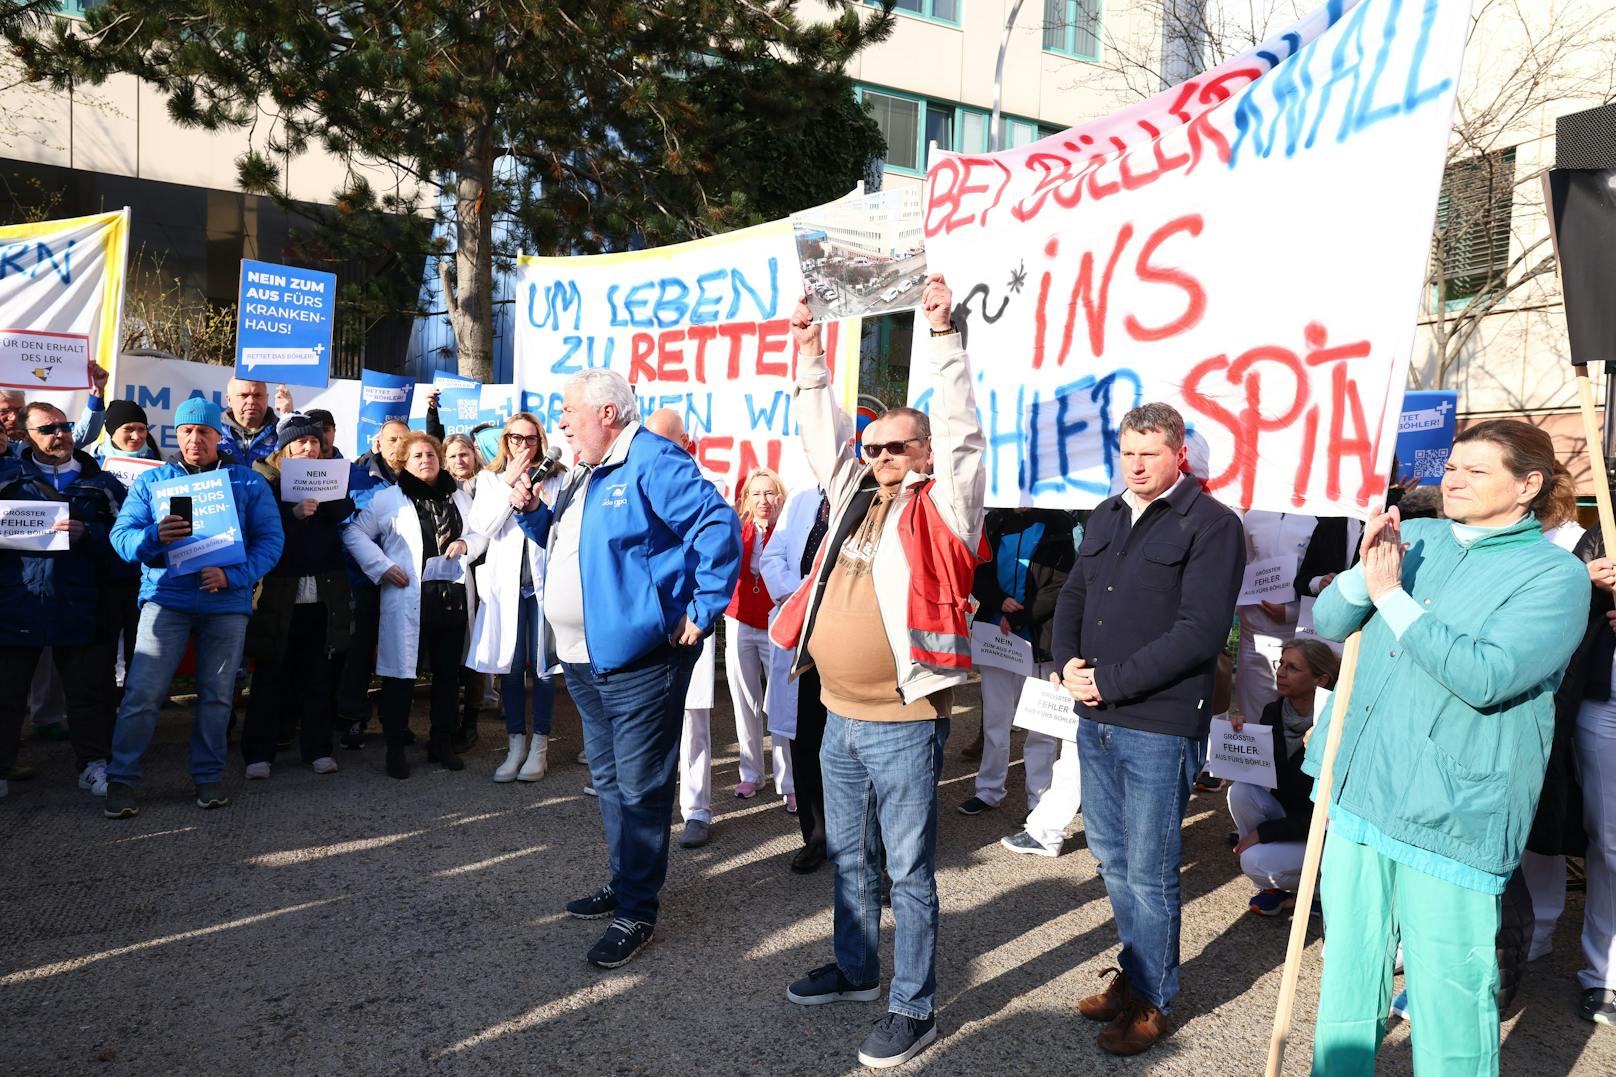 Riesen-Protest des Böhler-Personals vor Spital.